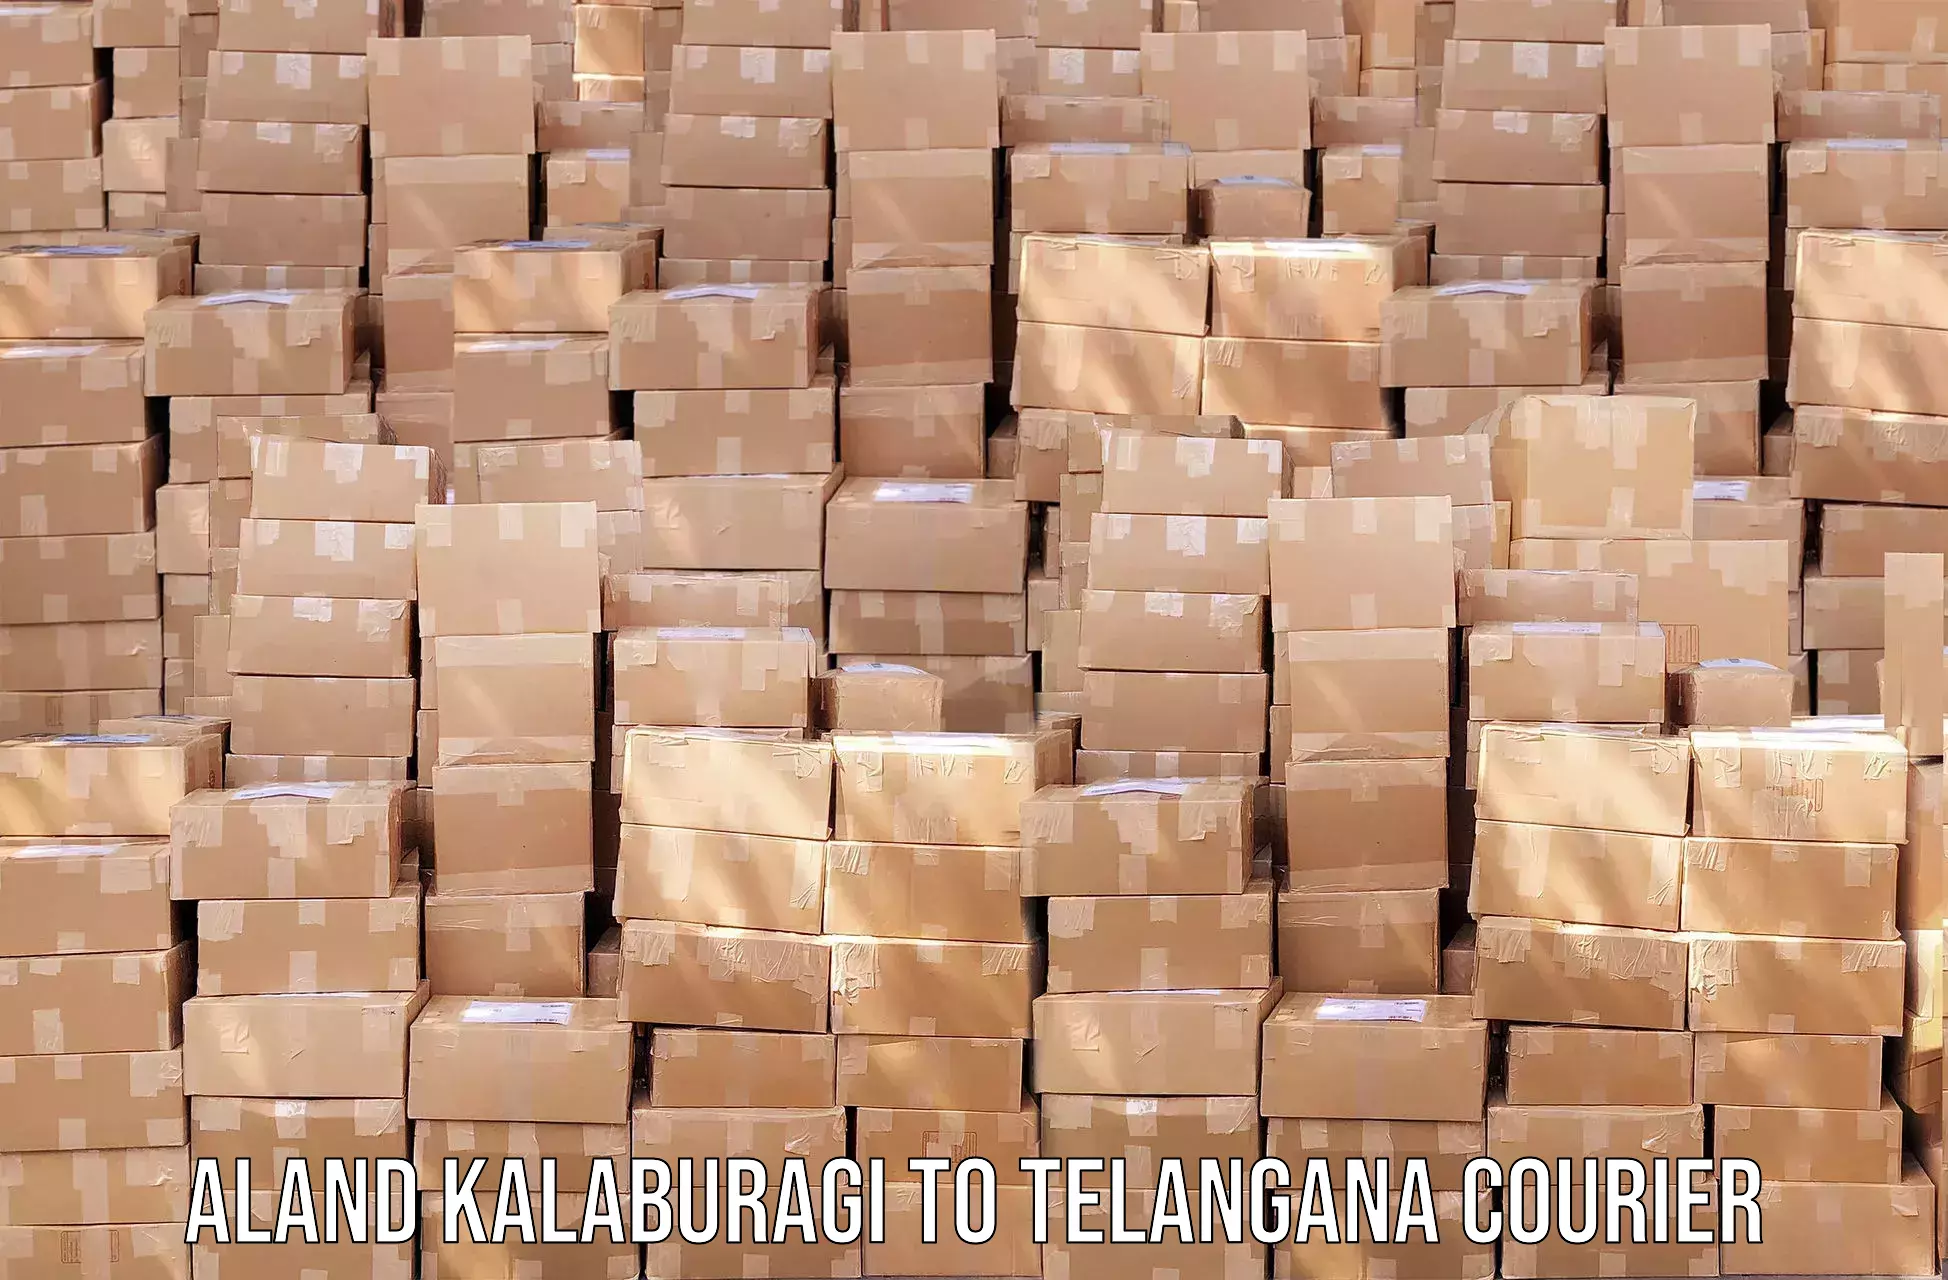 Efficient parcel service Aland Kalaburagi to Telangana